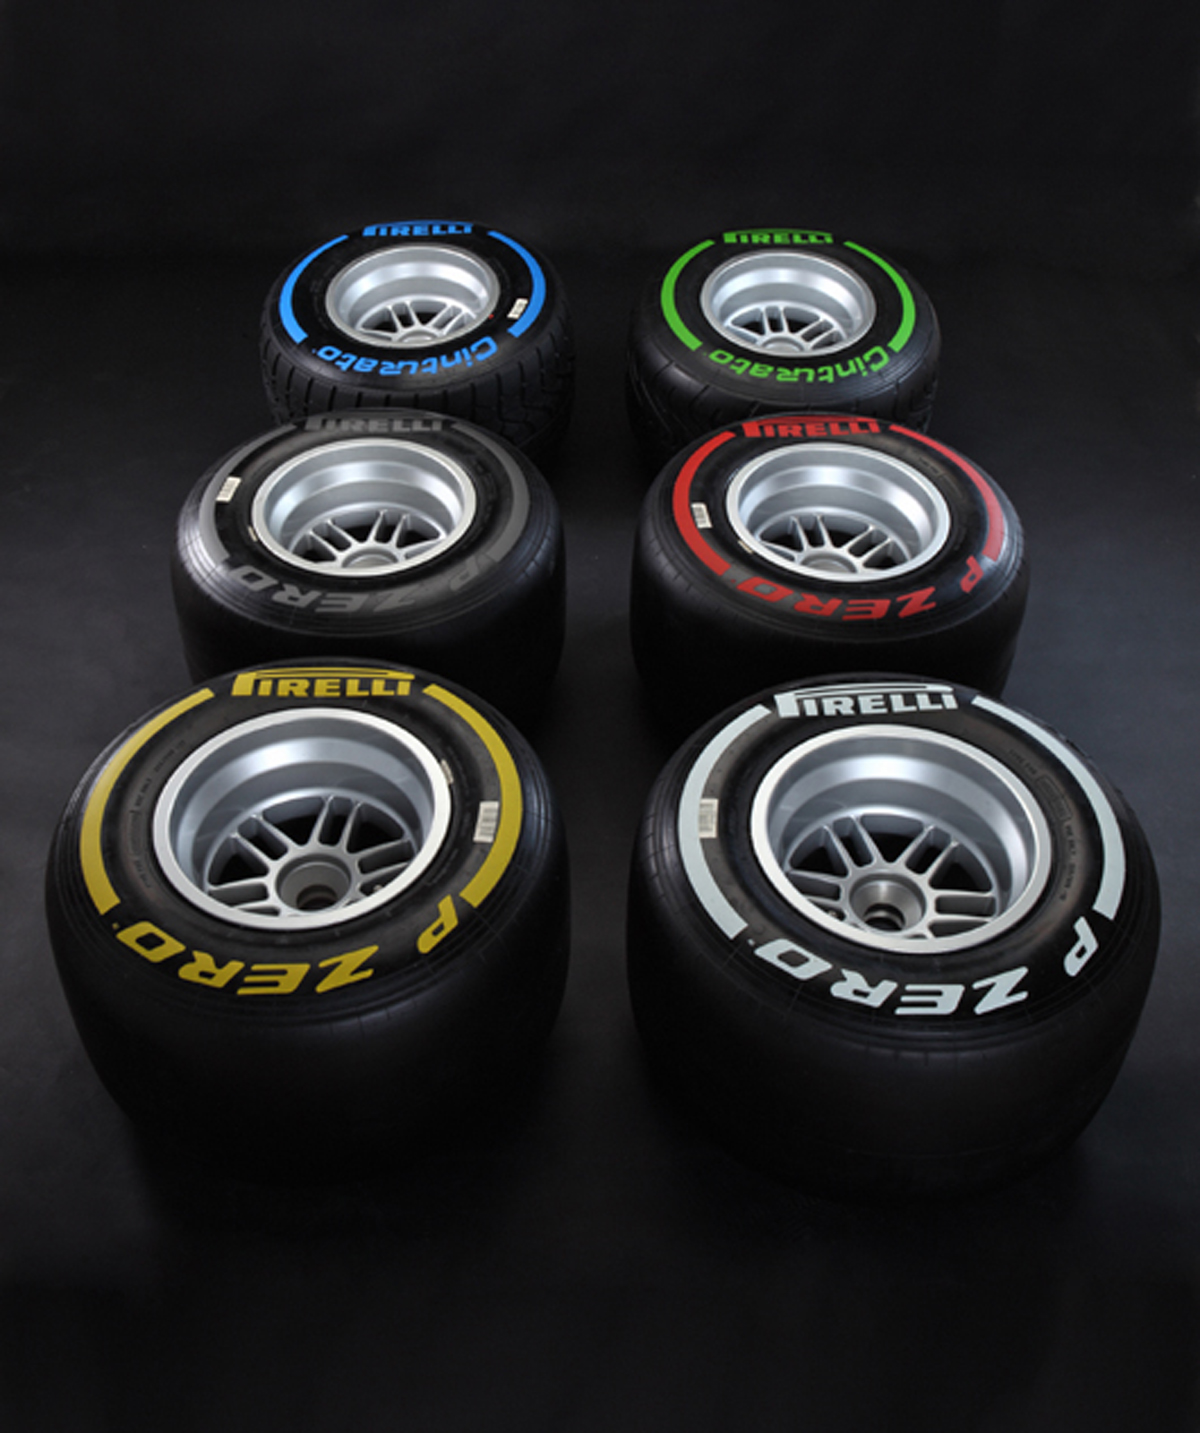 Pirelli F1 2012